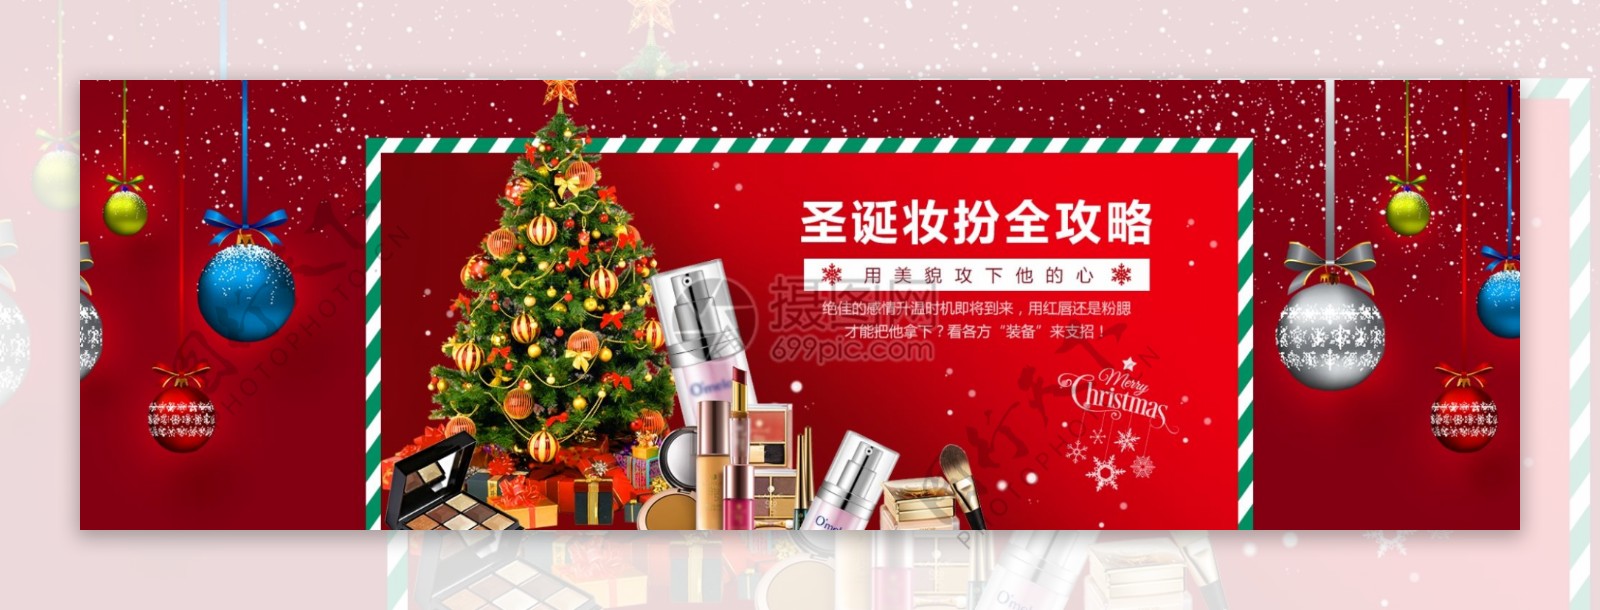 红色绚丽圣诞节化妆品促销淘宝banner